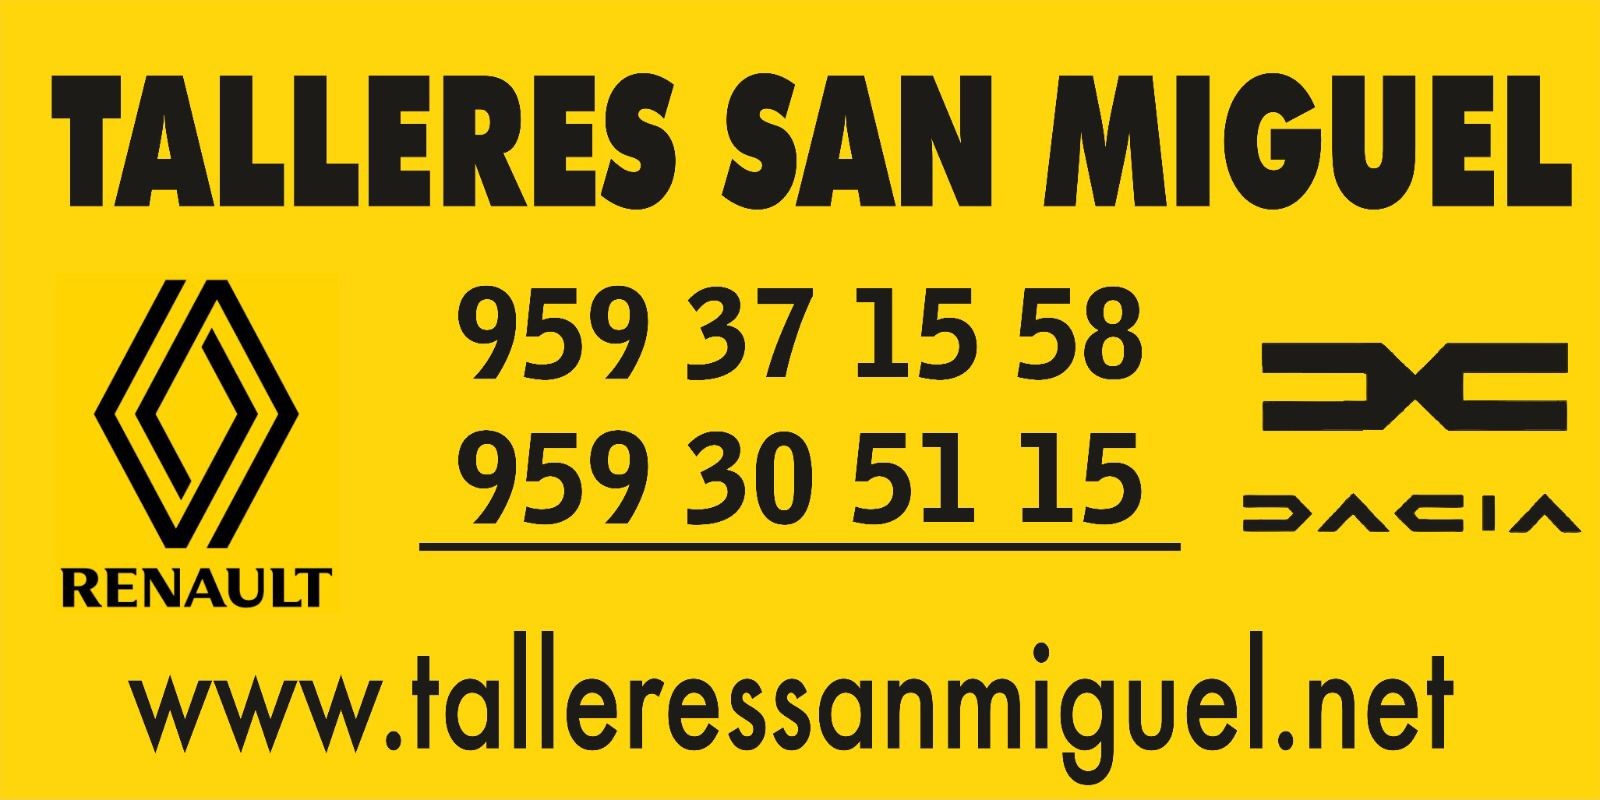 Images Talleres San Miguel Driveris Trigueros